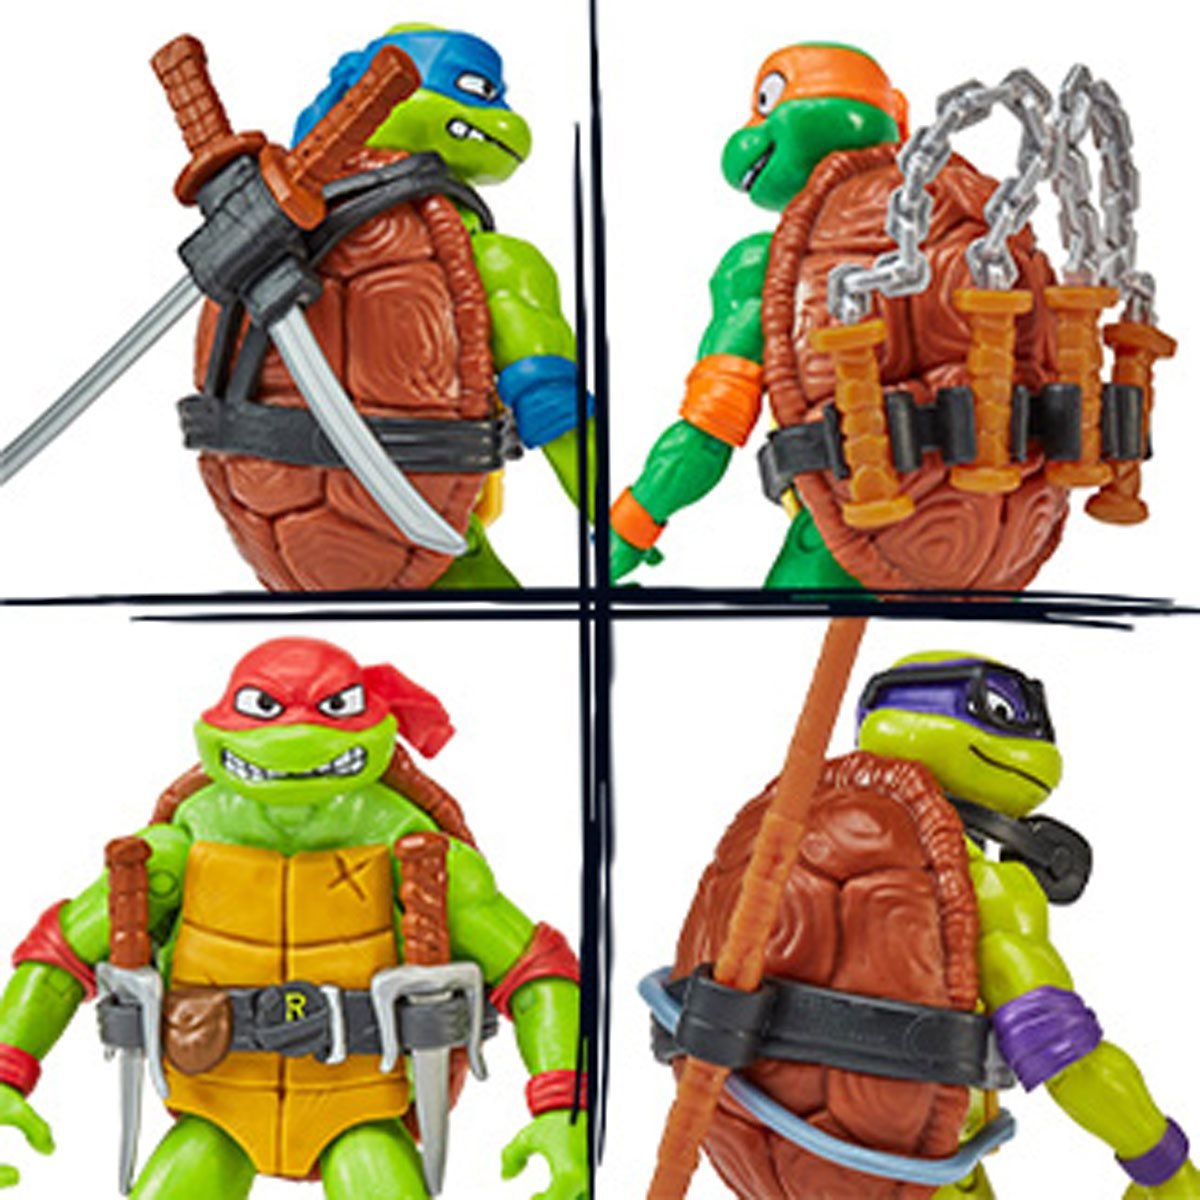 Teenage Mutant Ninja Turtles Mutant Mayhem Movie Turtle Basic Figure Bundle, 83341